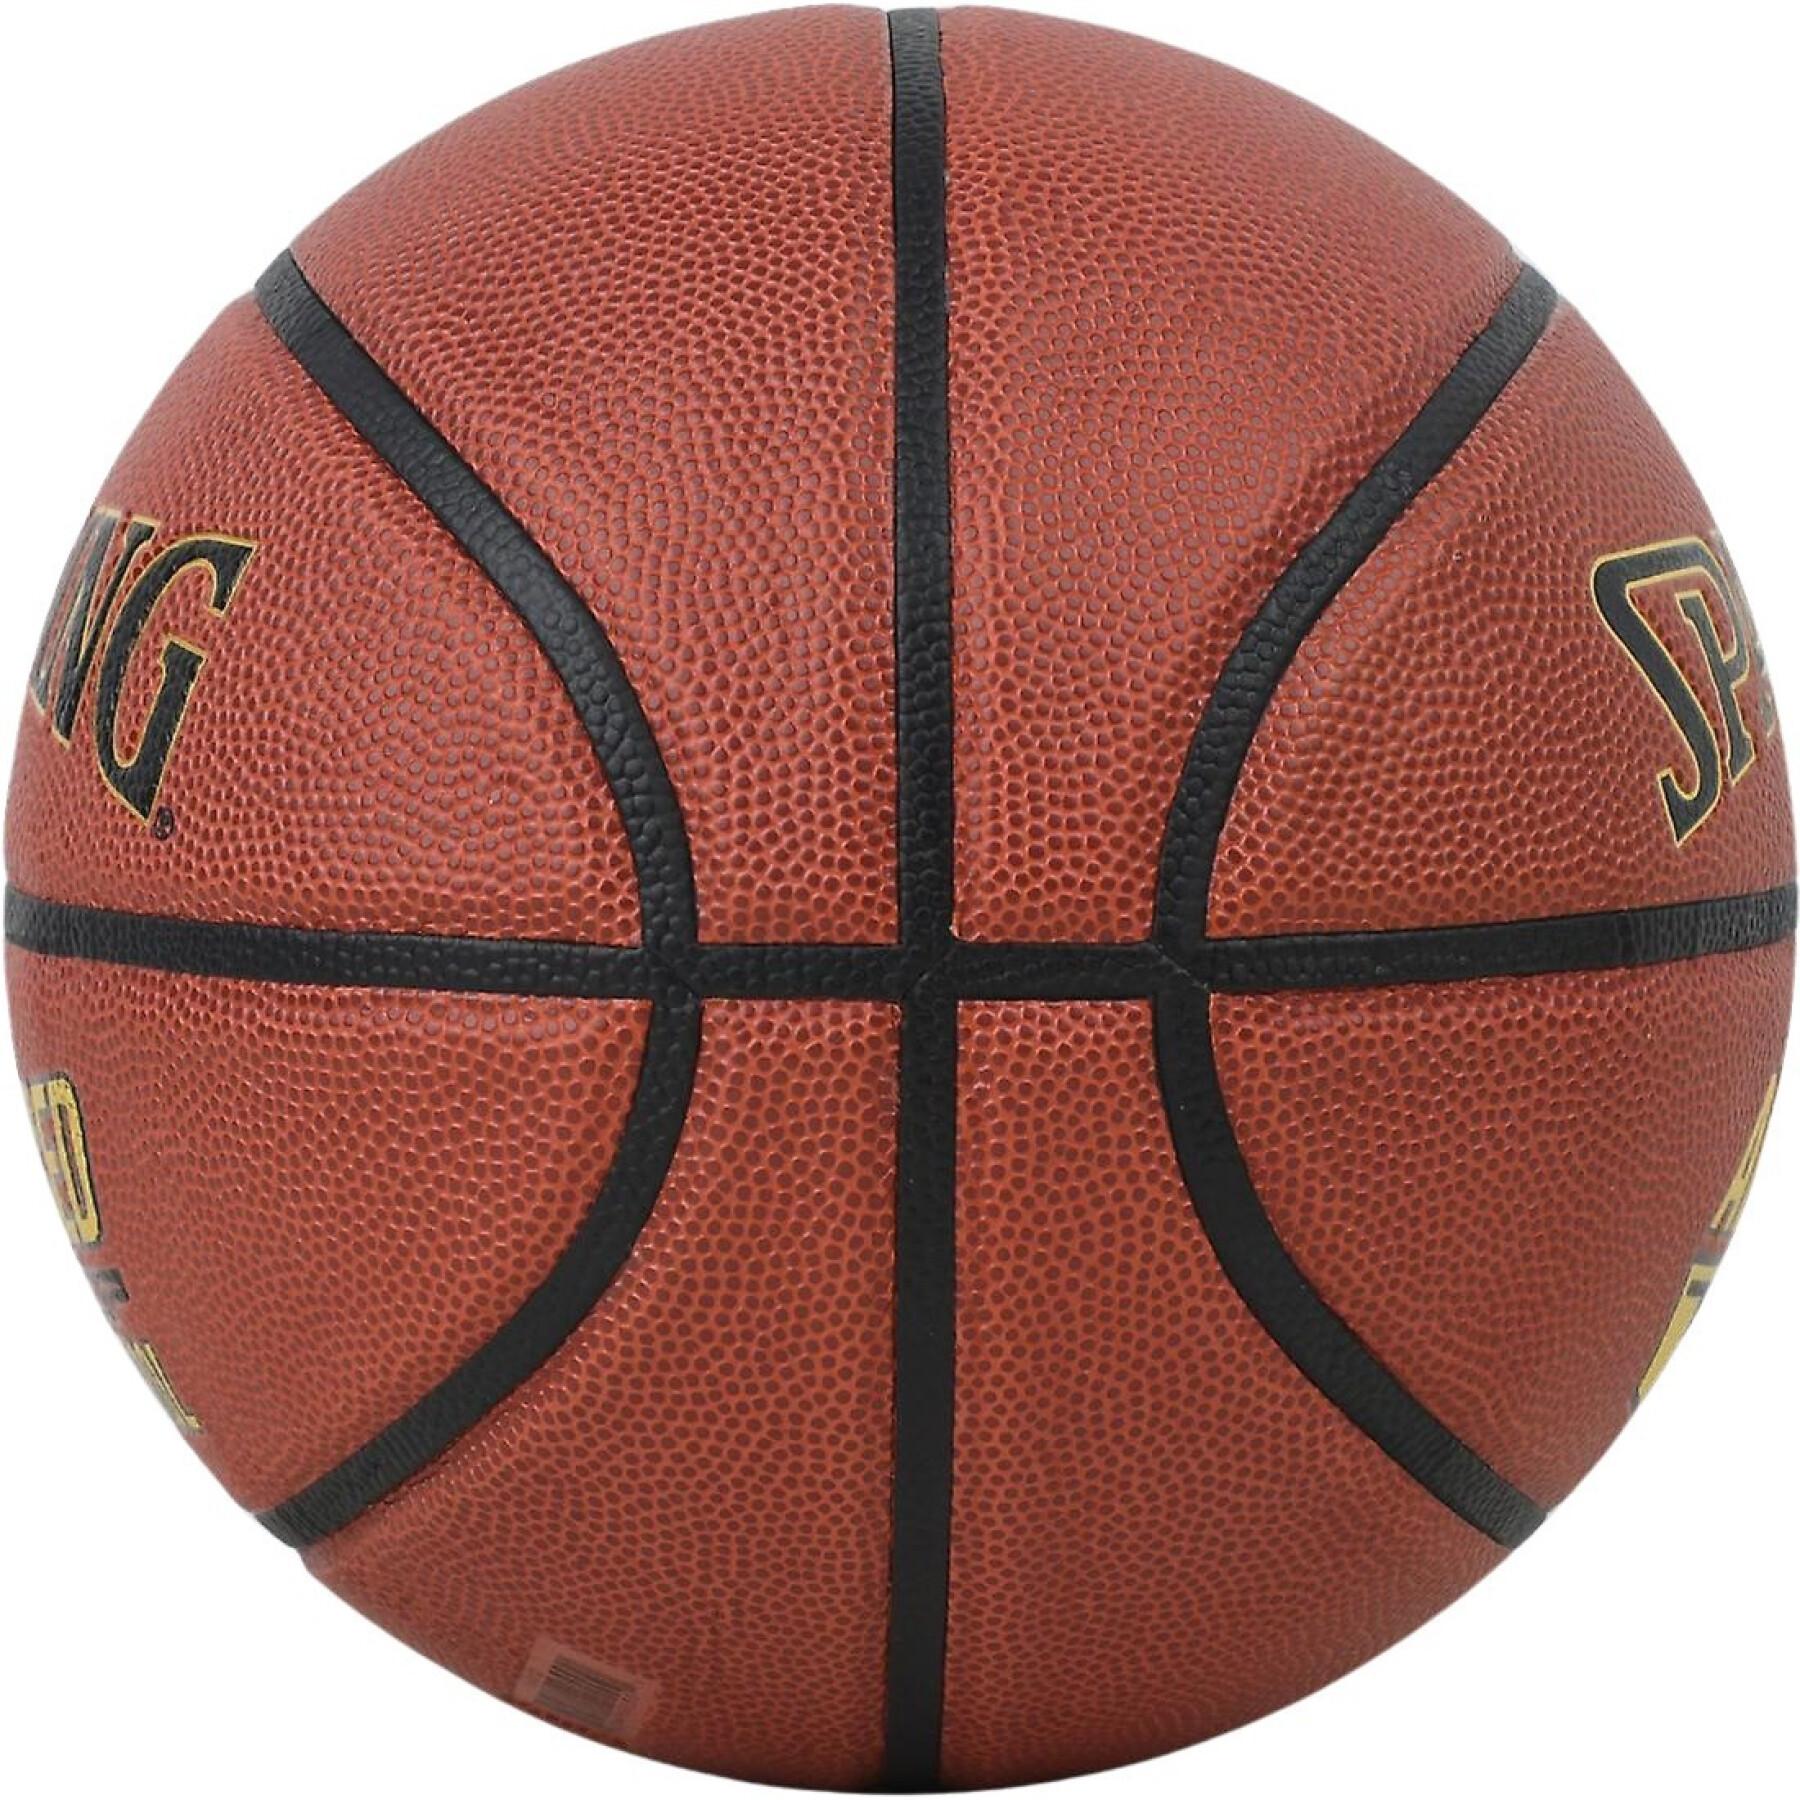 Ballon Spalding AGC Composite